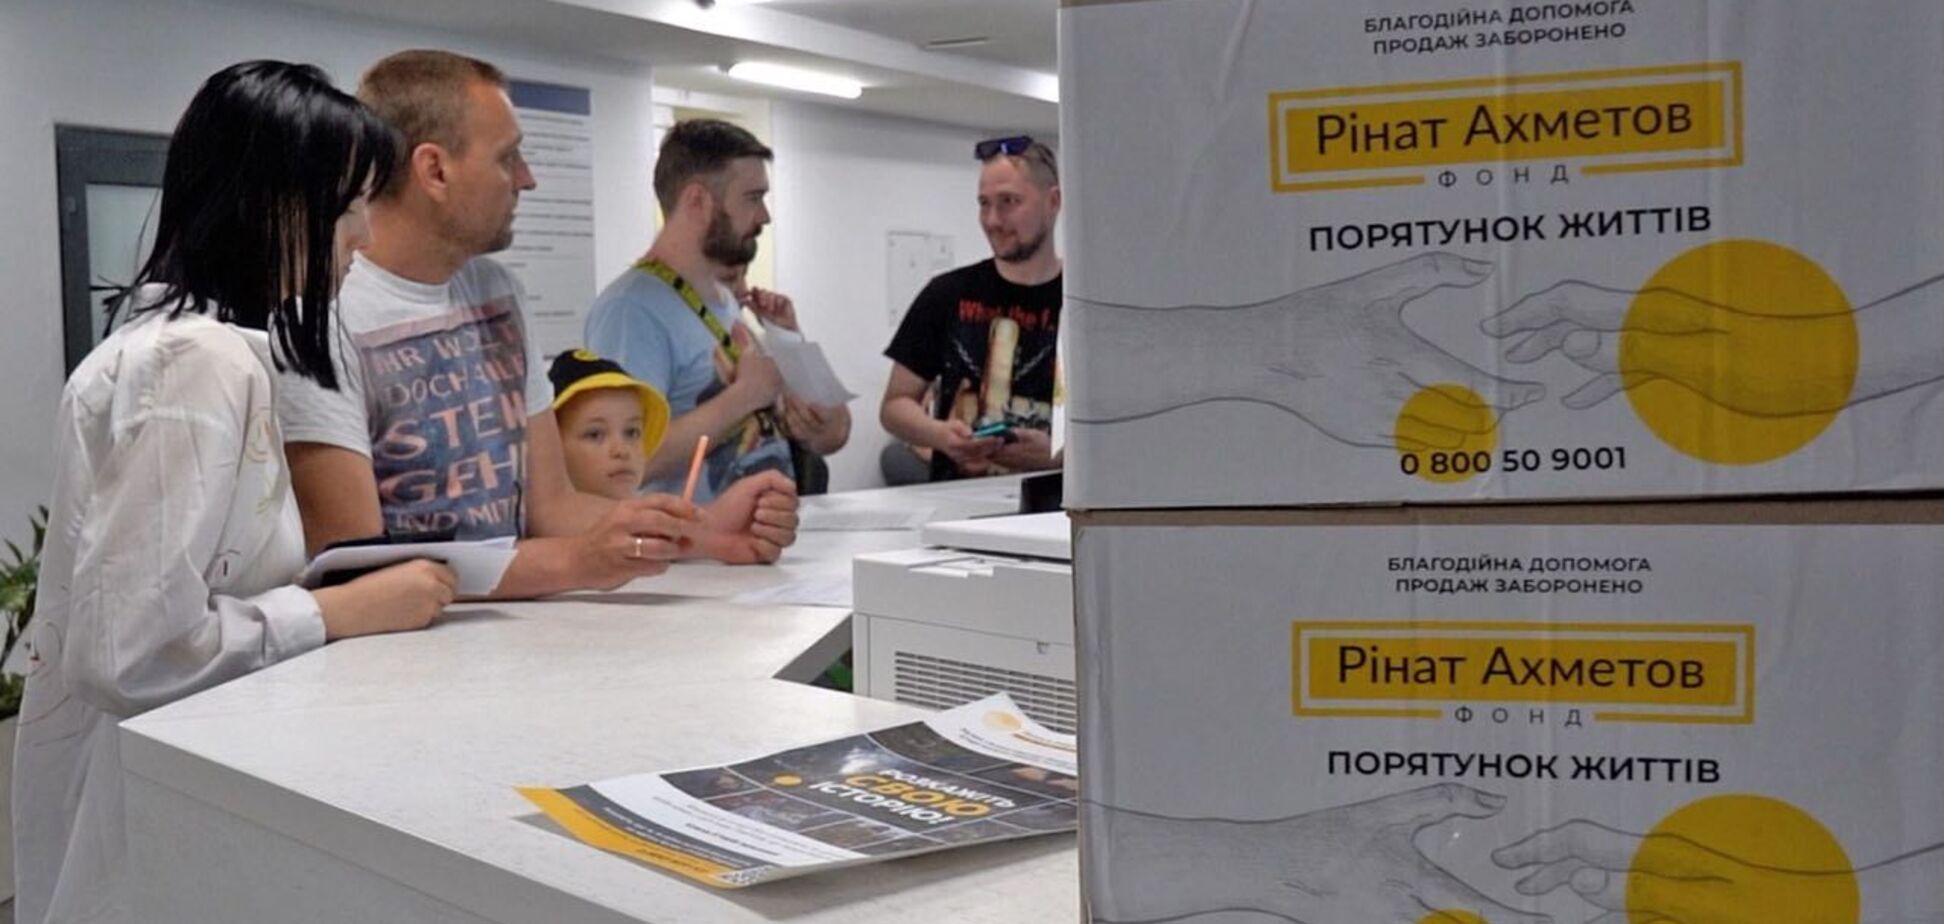 Фонд Ріната Ахметова передав до Дарницького району Києва партію гумдопомоги для переселенців